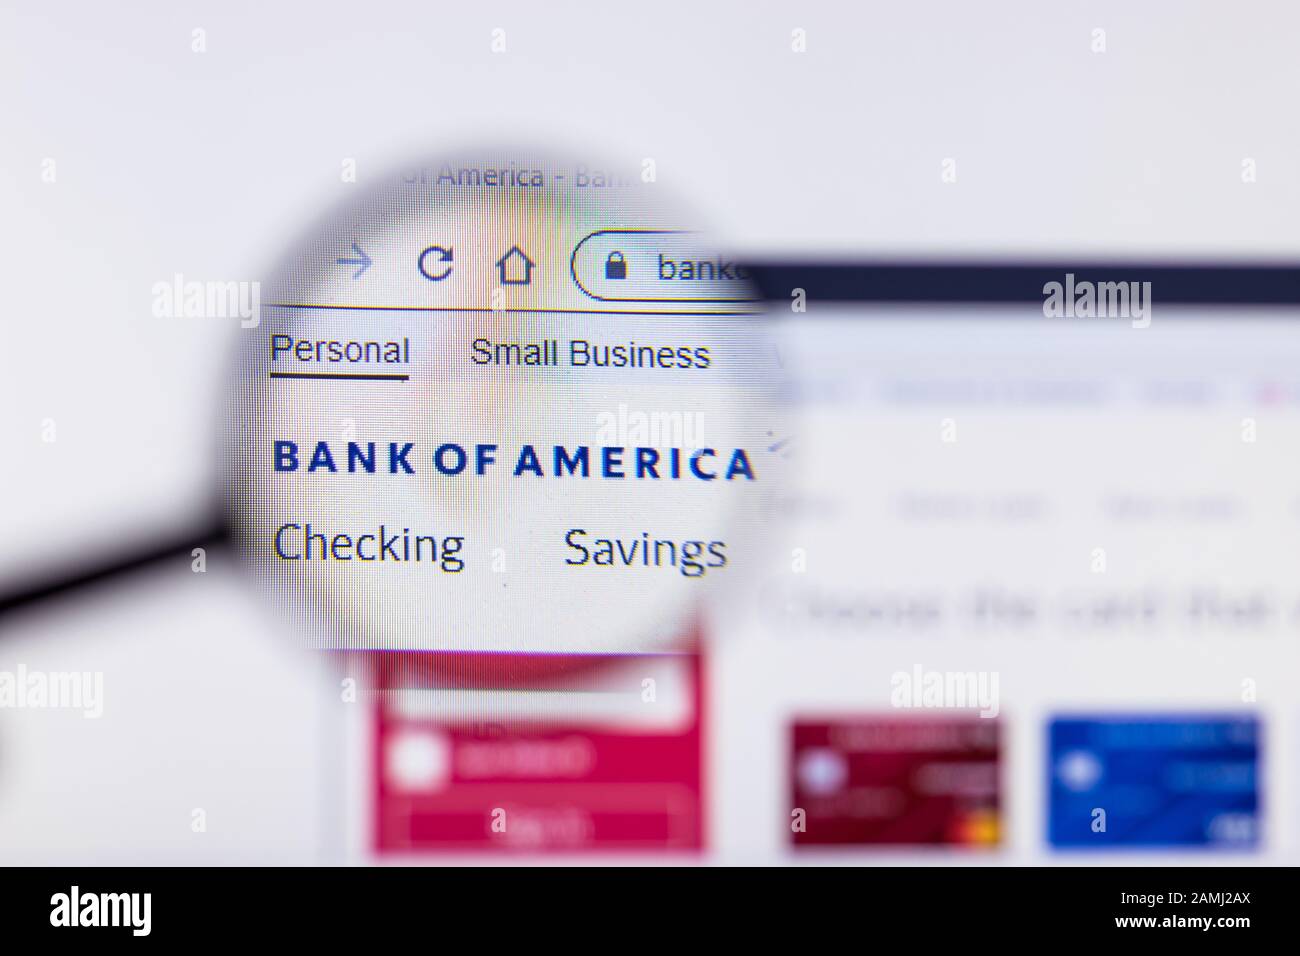 Saint-Pétersbourg, Russie - 10 janvier 2020: Page du site Web de la Banque d'Amérique sur un écran d'ordinateur portable avec logo, éditorial illustratif Banque D'Images